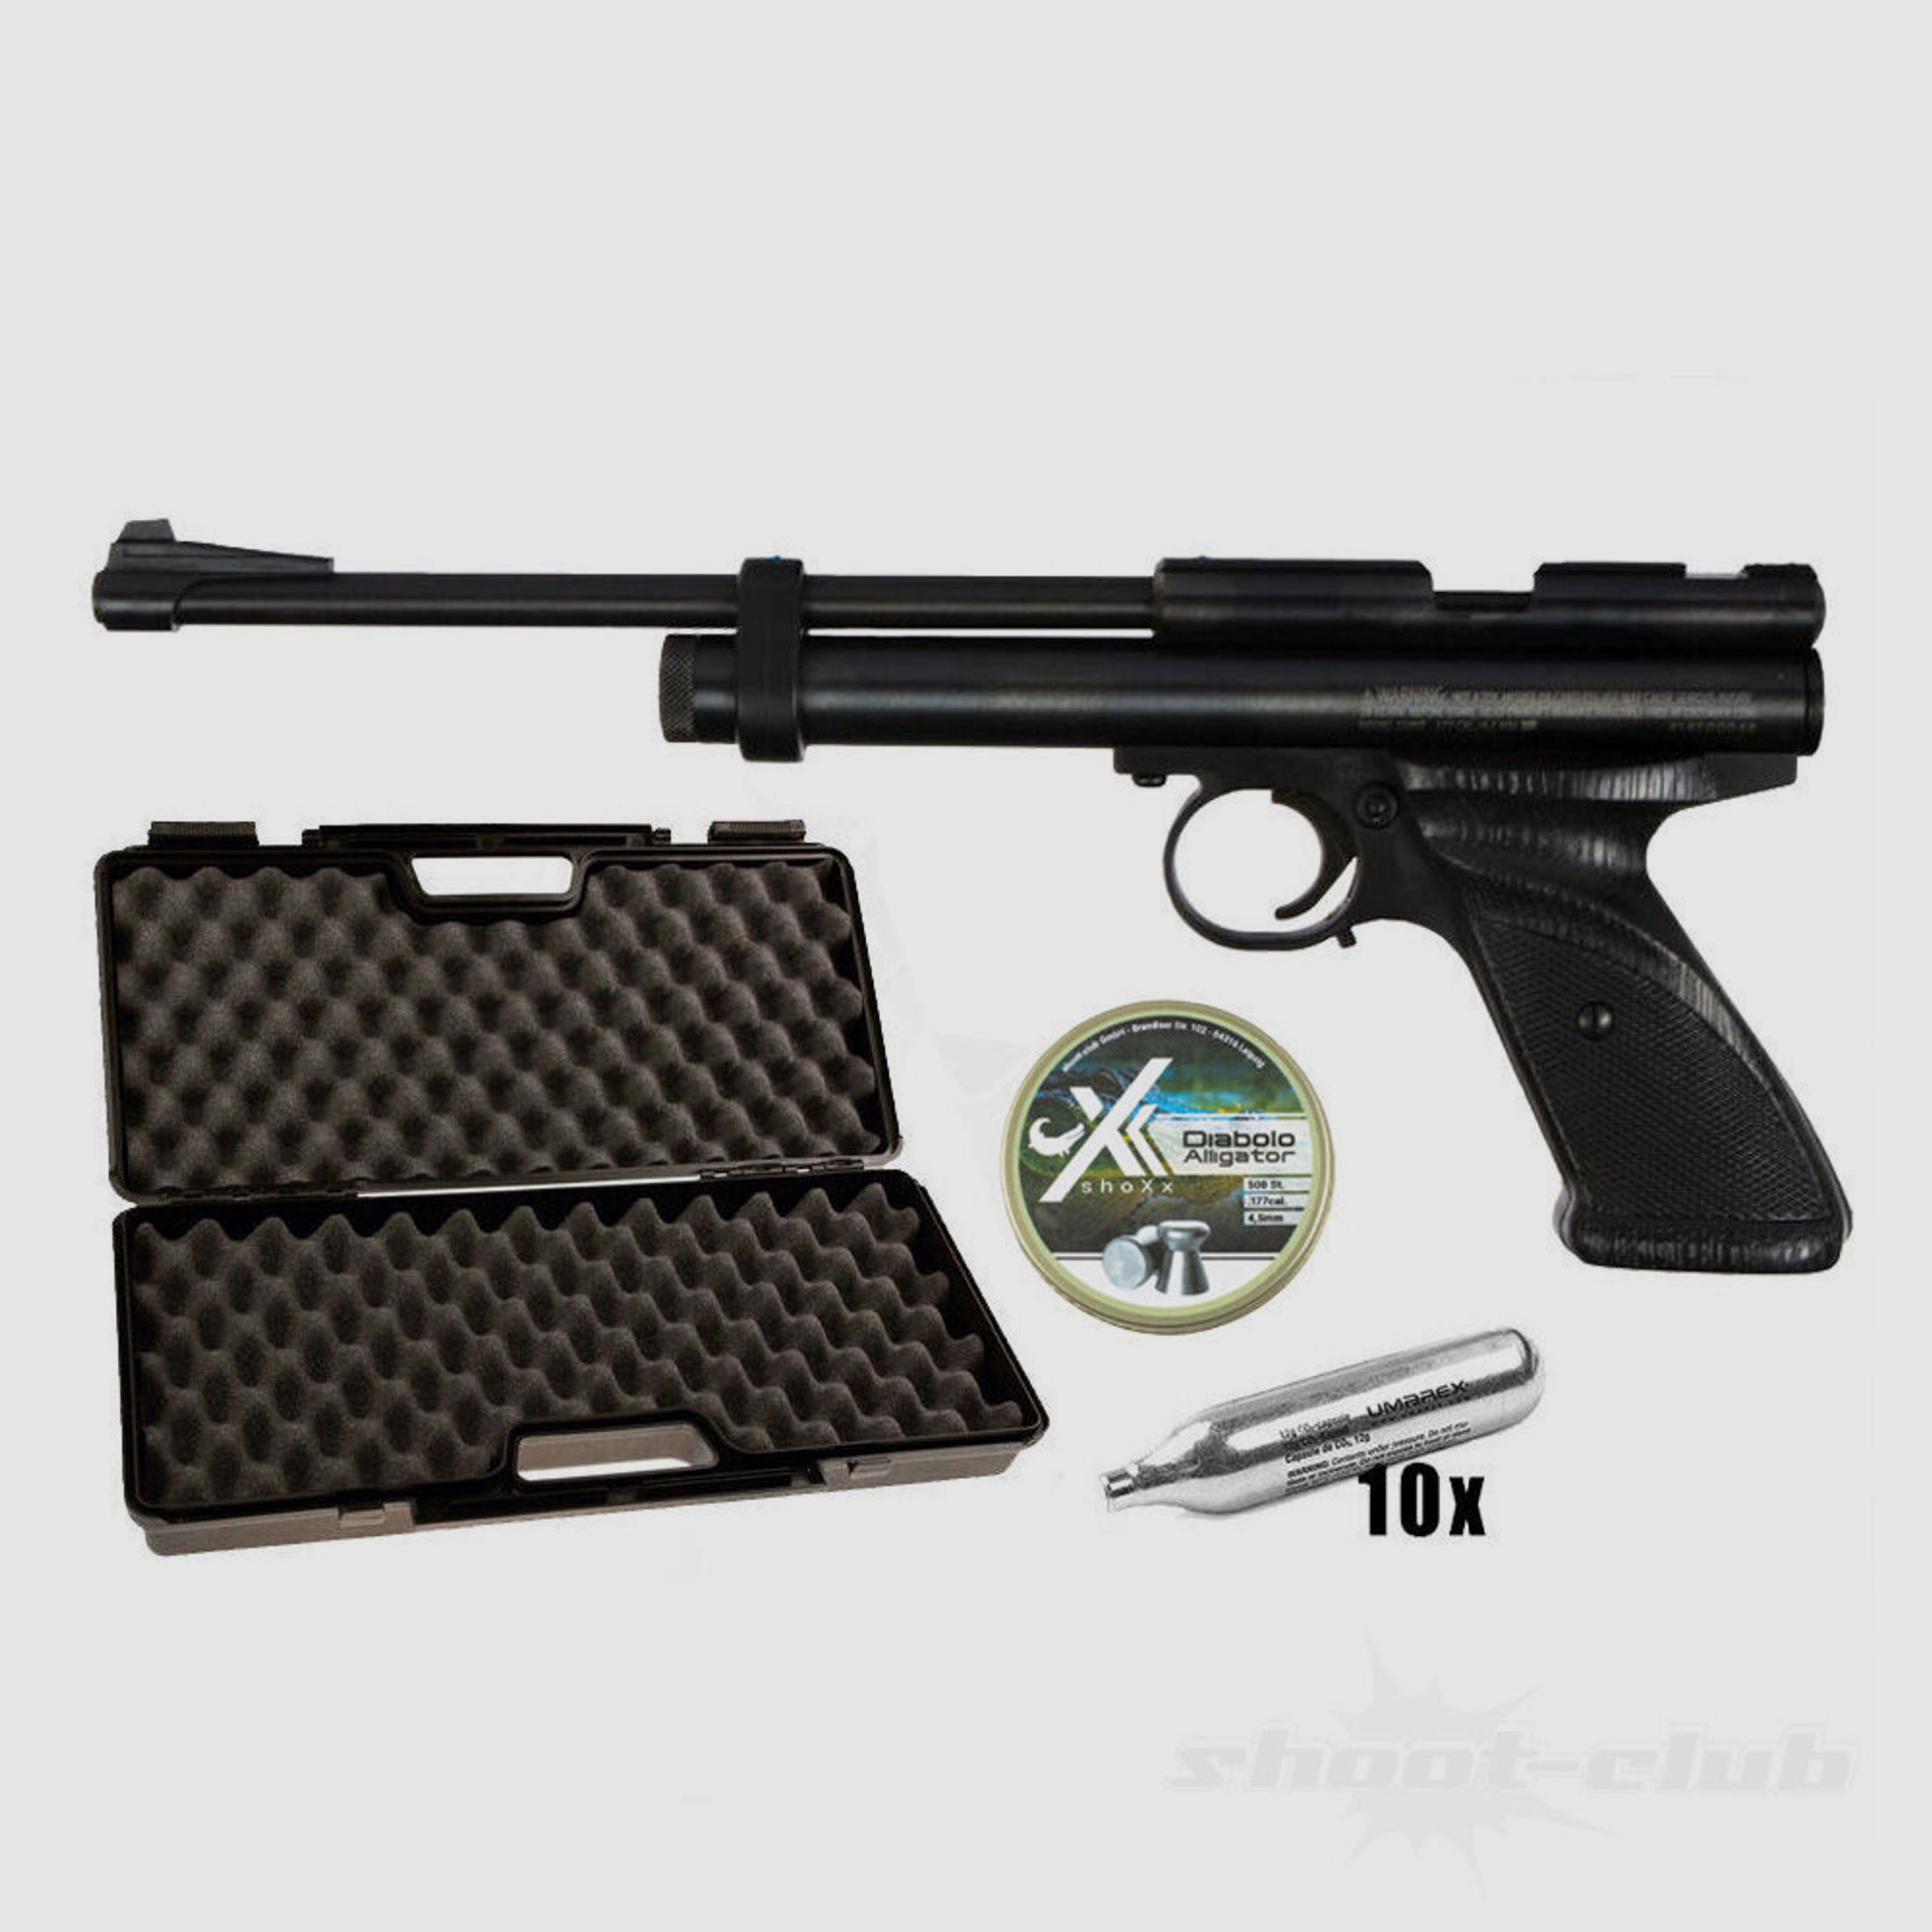 Crosman Modell 2300T CO2 Pistole 4,5mm Diabolos im Koffer-Set